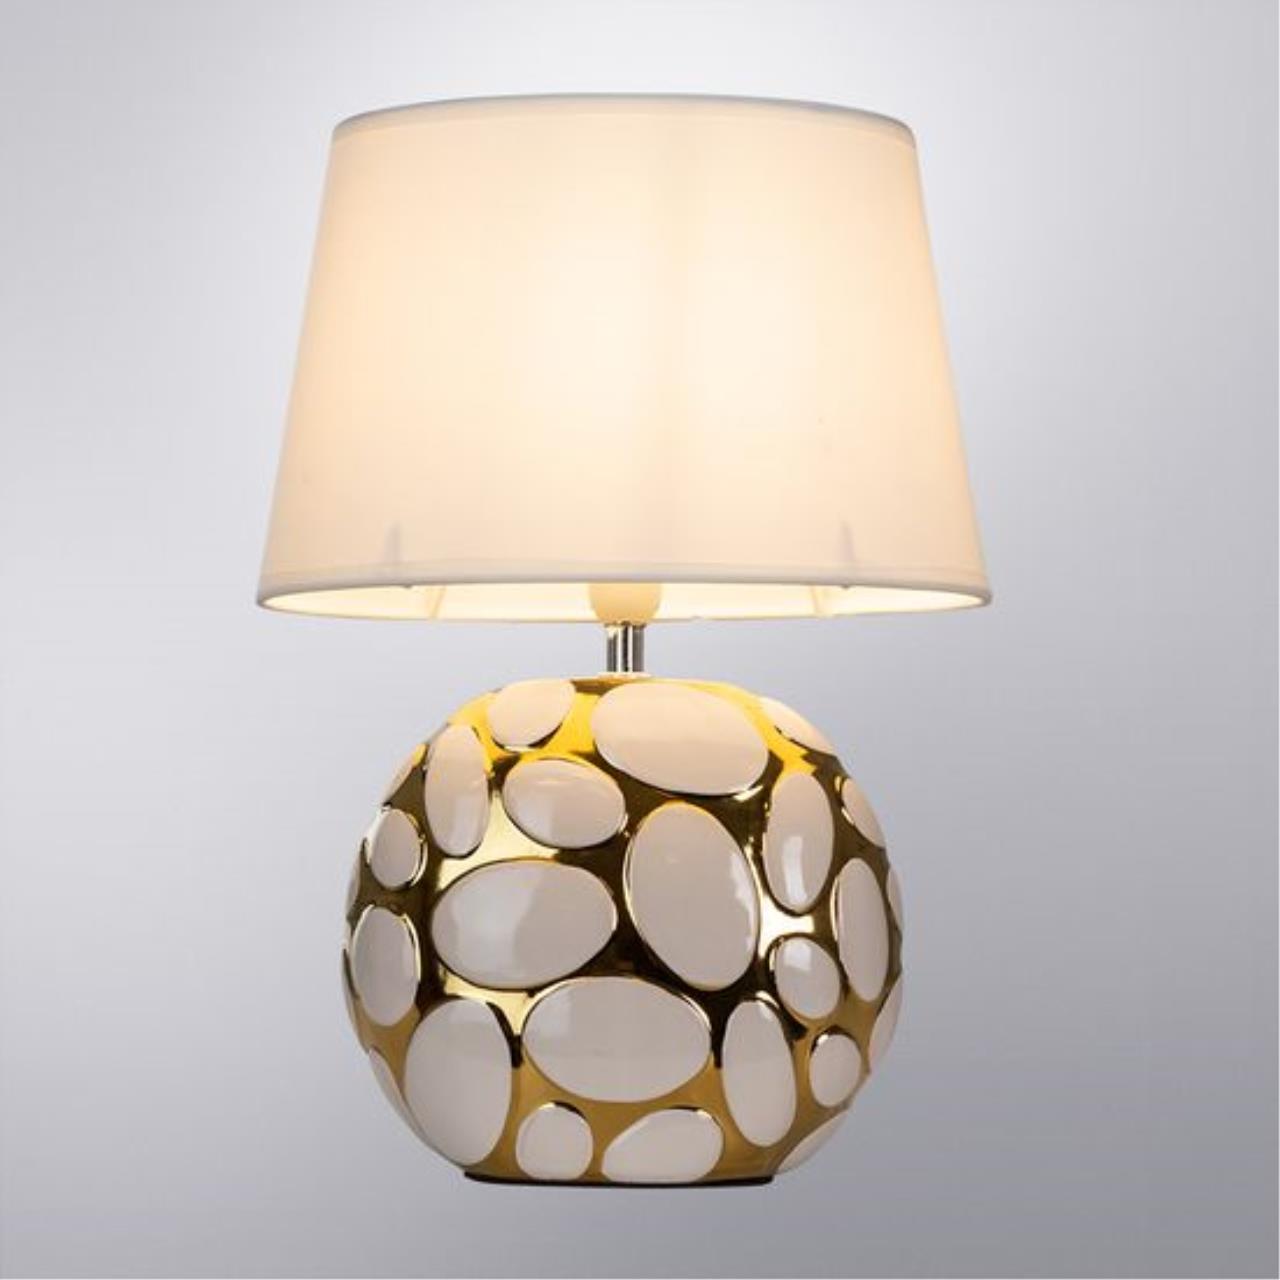 Интерьерная настольная лампа Arte lamp A4063LT-1GO